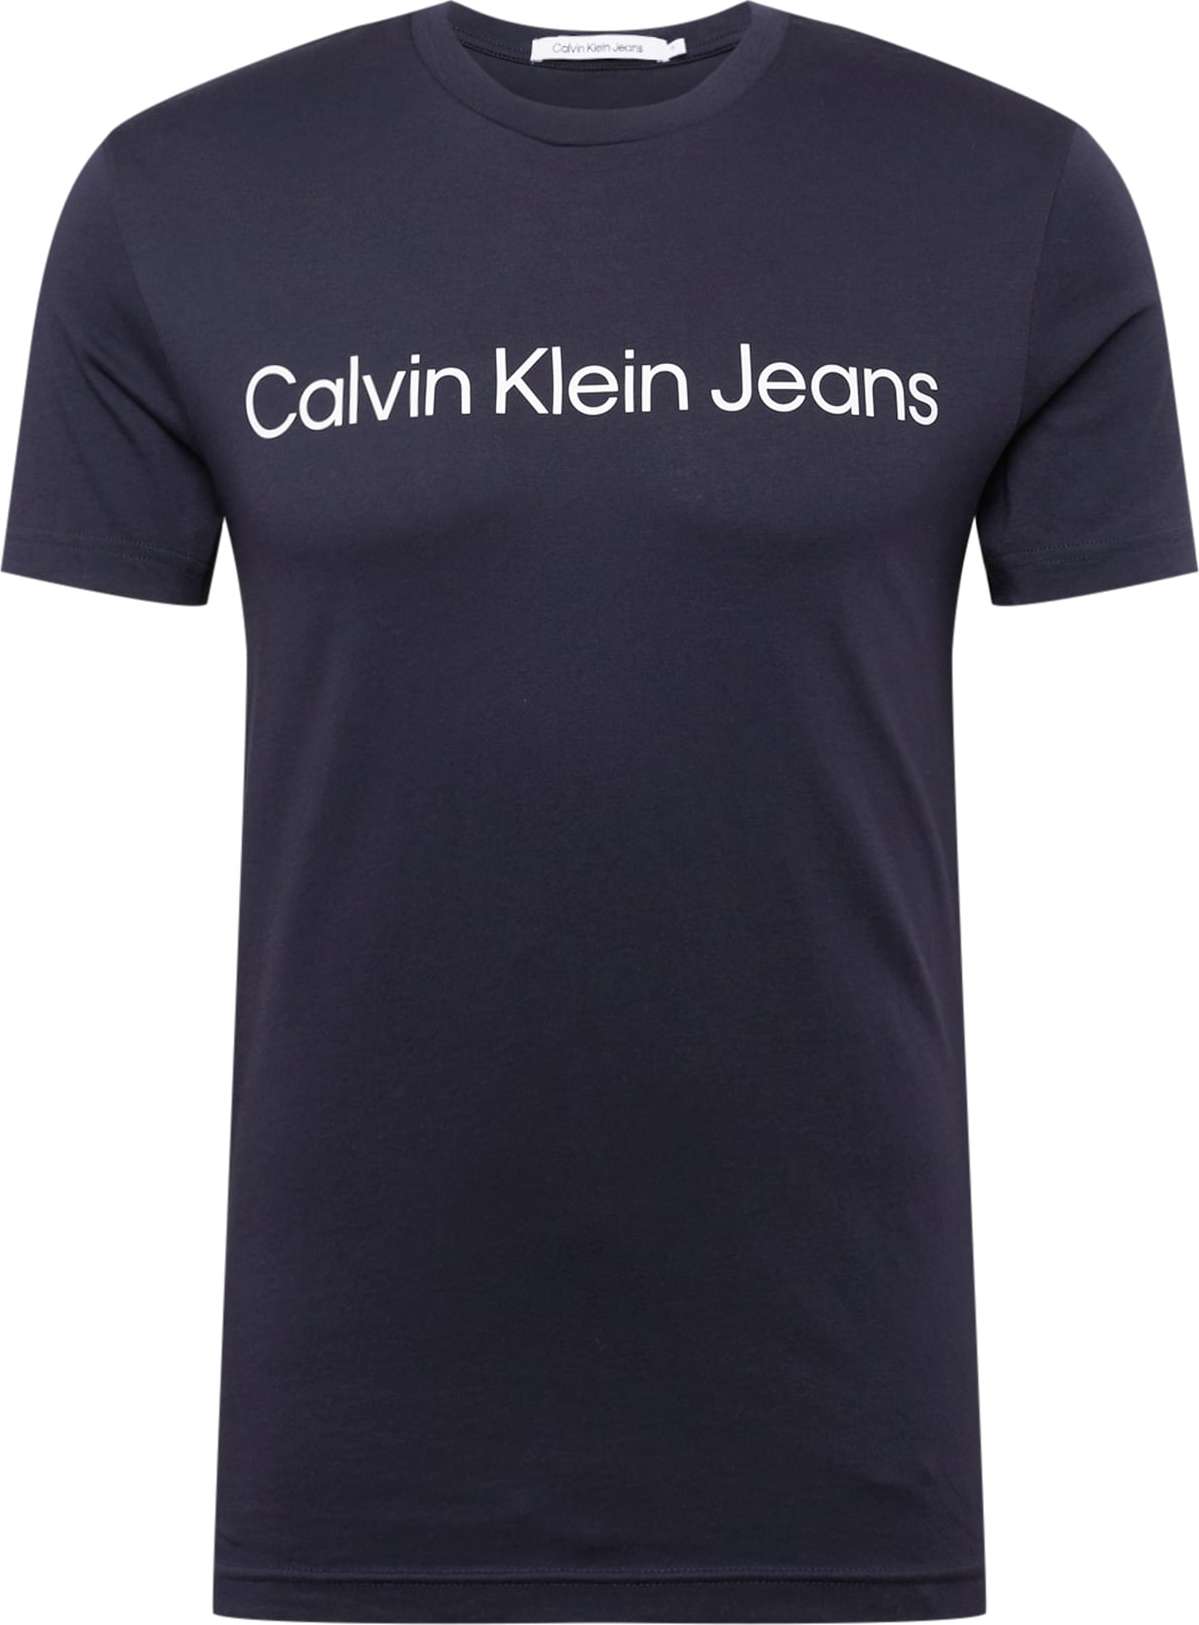 Tričko Calvin Klein Jeans námořnická modř / bílá